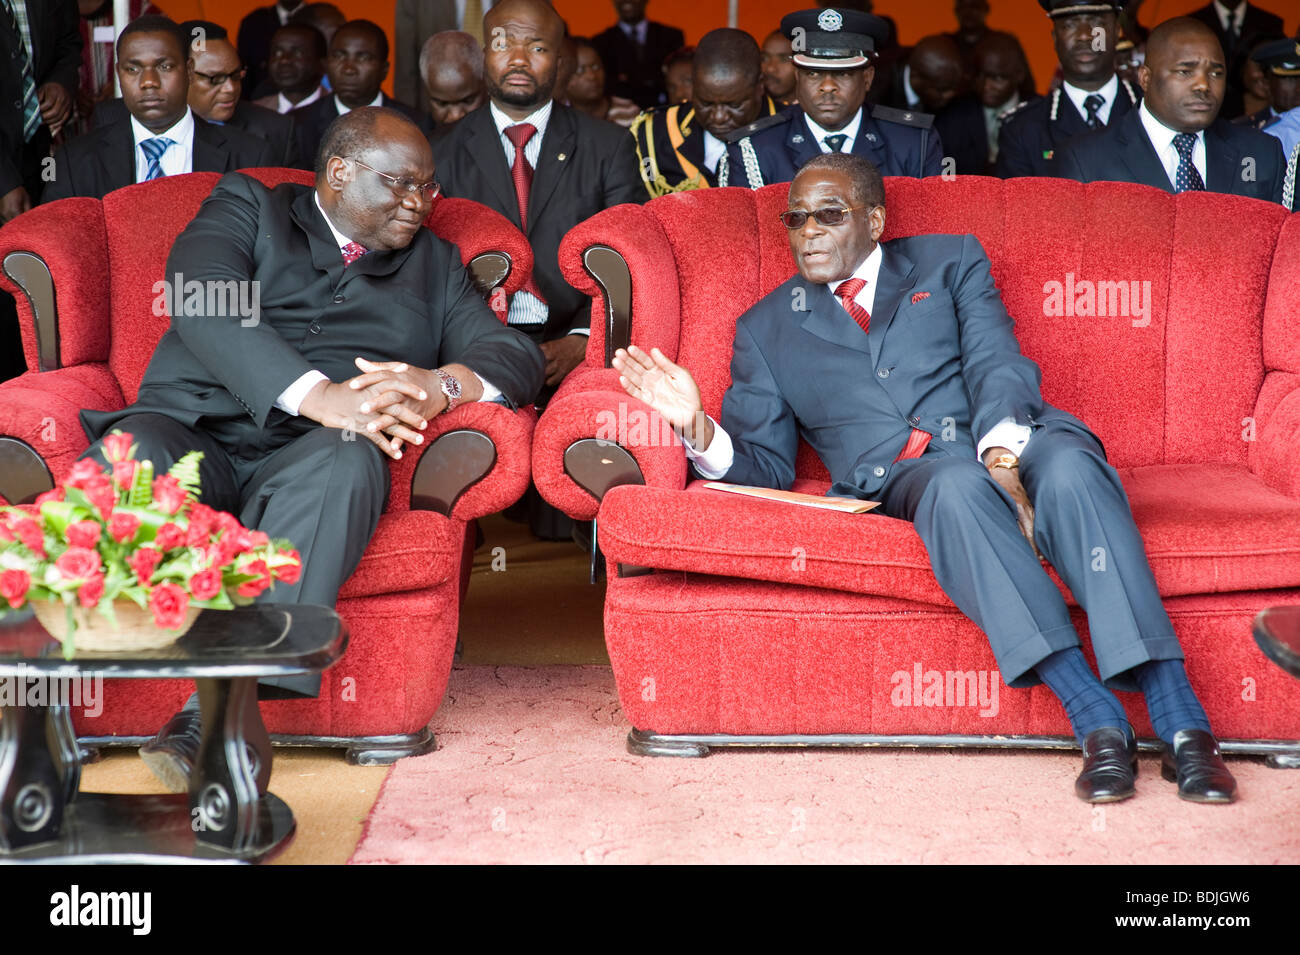 Robert Mugabe visiting Zambia on 7th August 2009 seated next to Tendai Diti, Zimbabwe's finance minister. Stock Photo